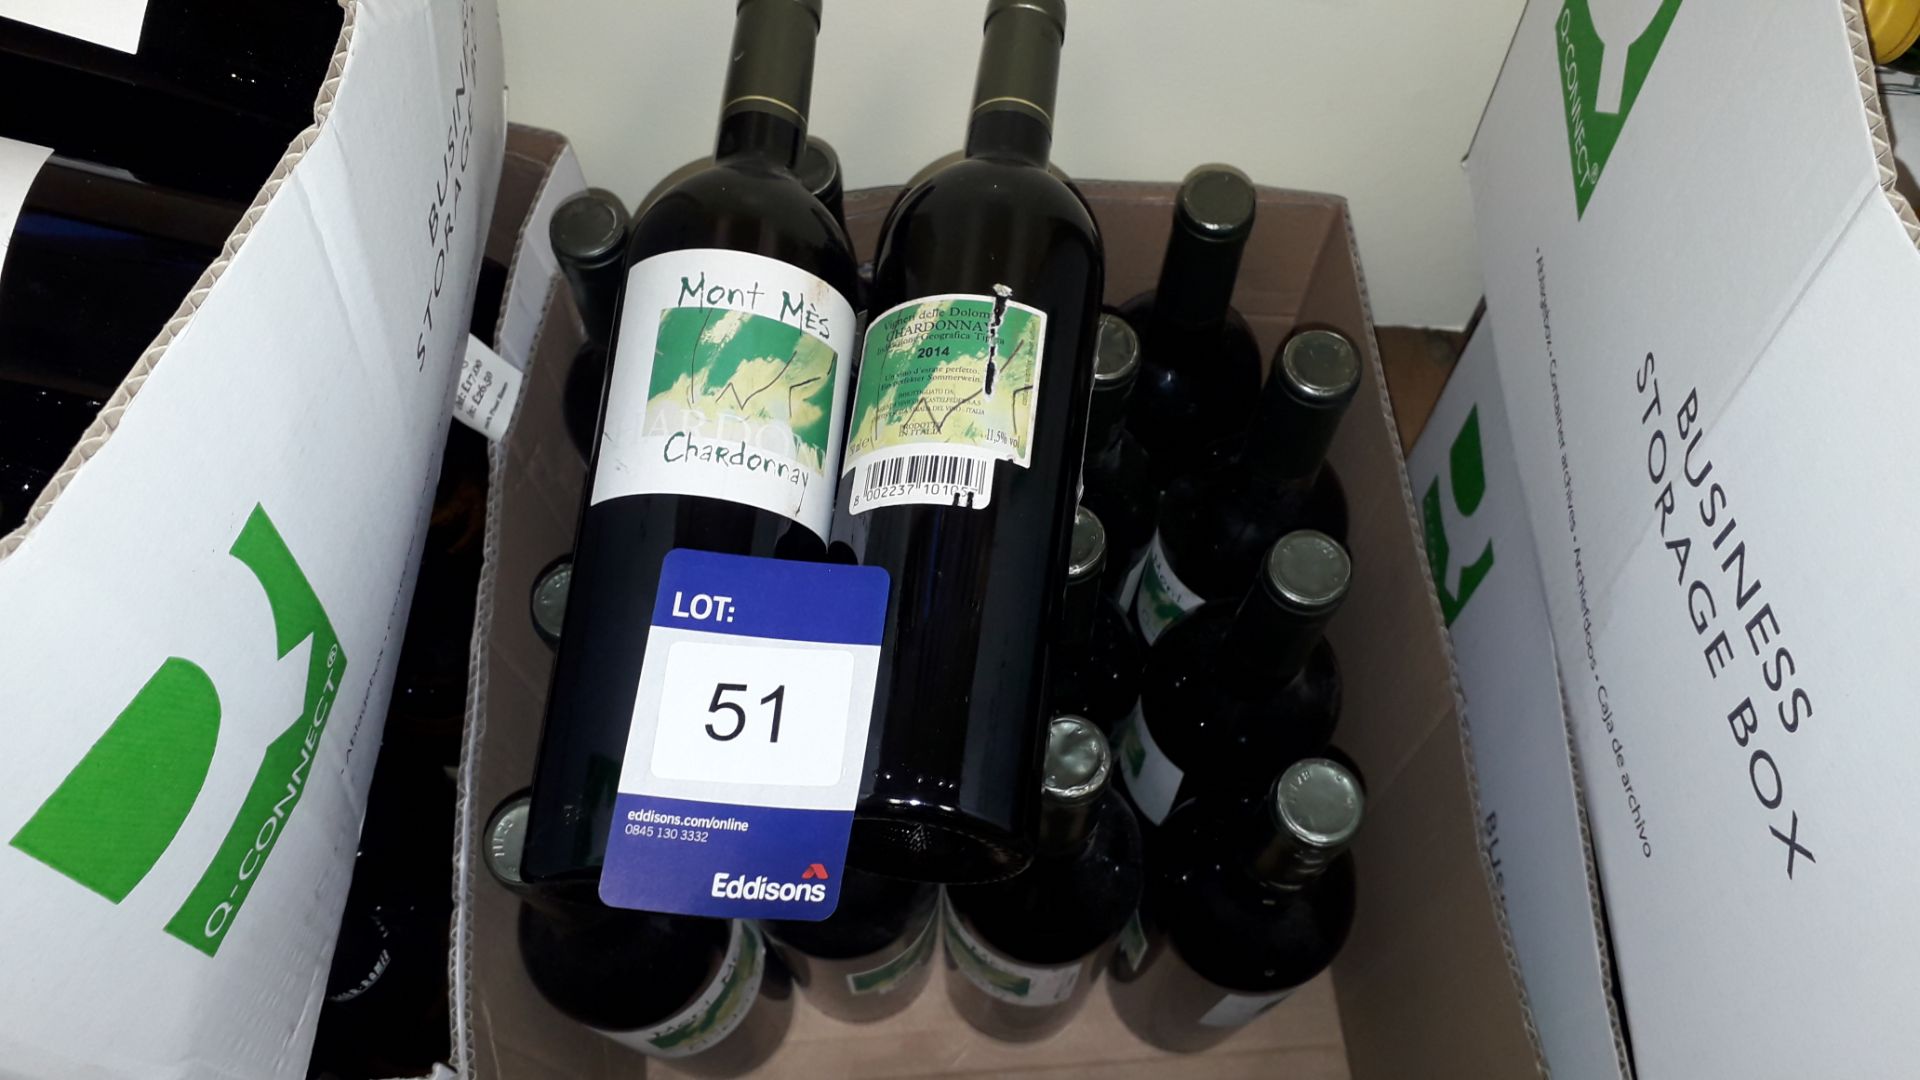 18 x 75cl bottles Castlefeder Mont Mes Chardonnay